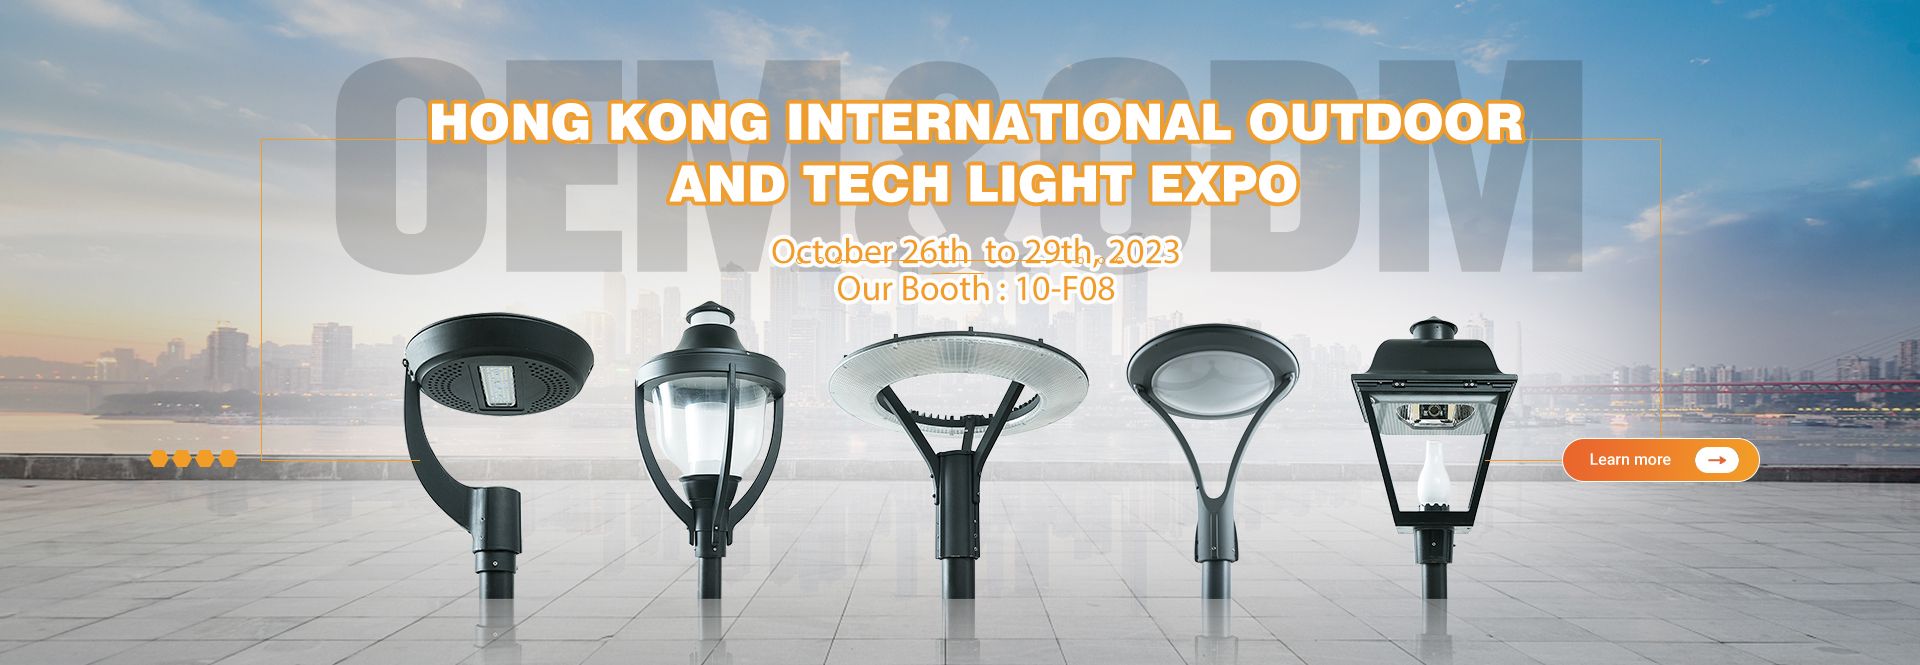 Hong Kong International Outdoor And Tech Light Expo